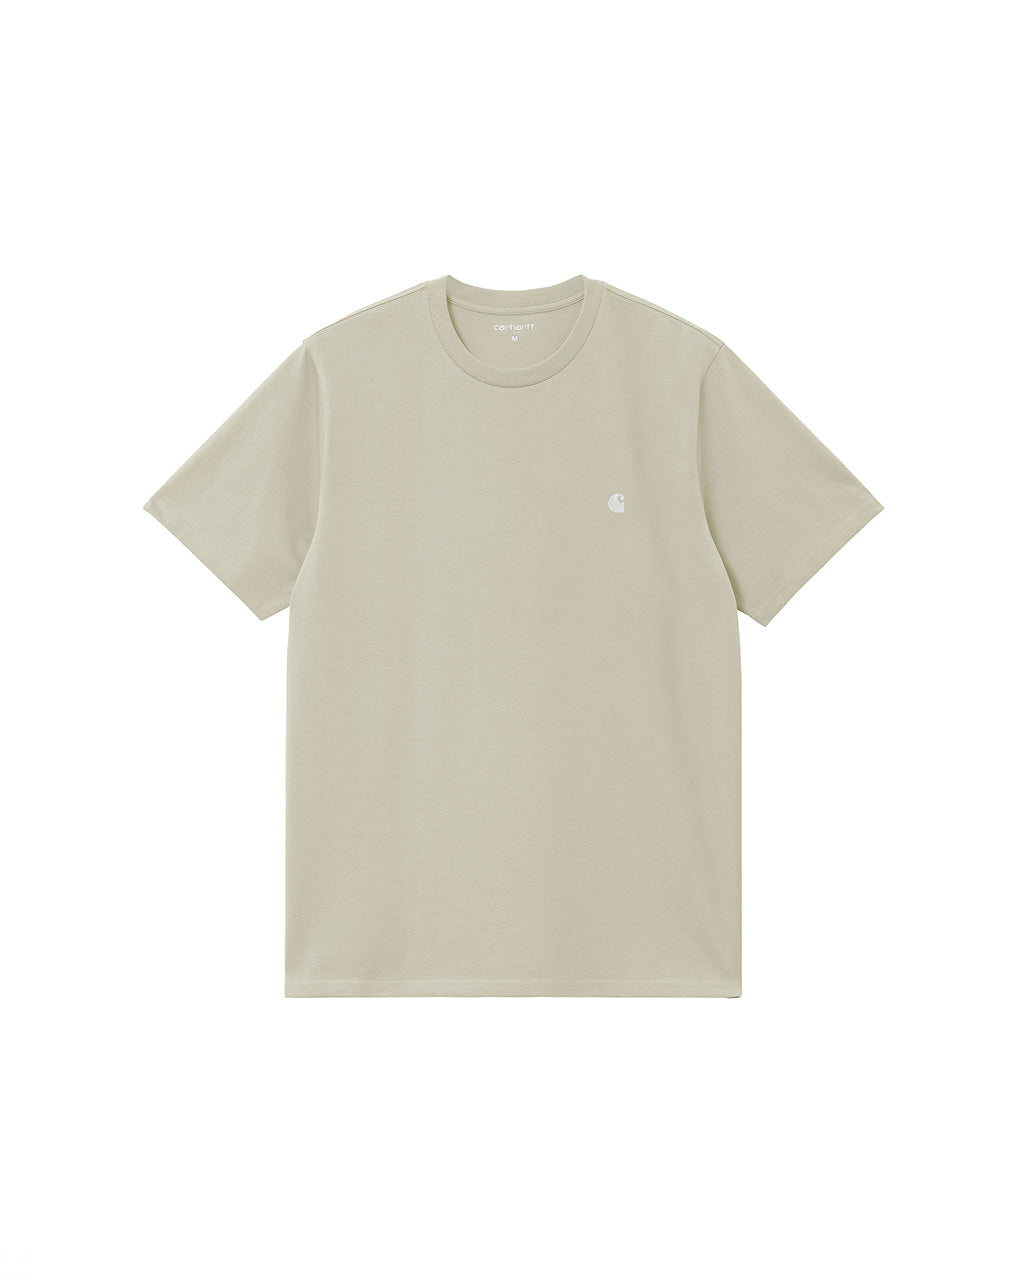 Carhartt WIP S/S Madison T-Shirt